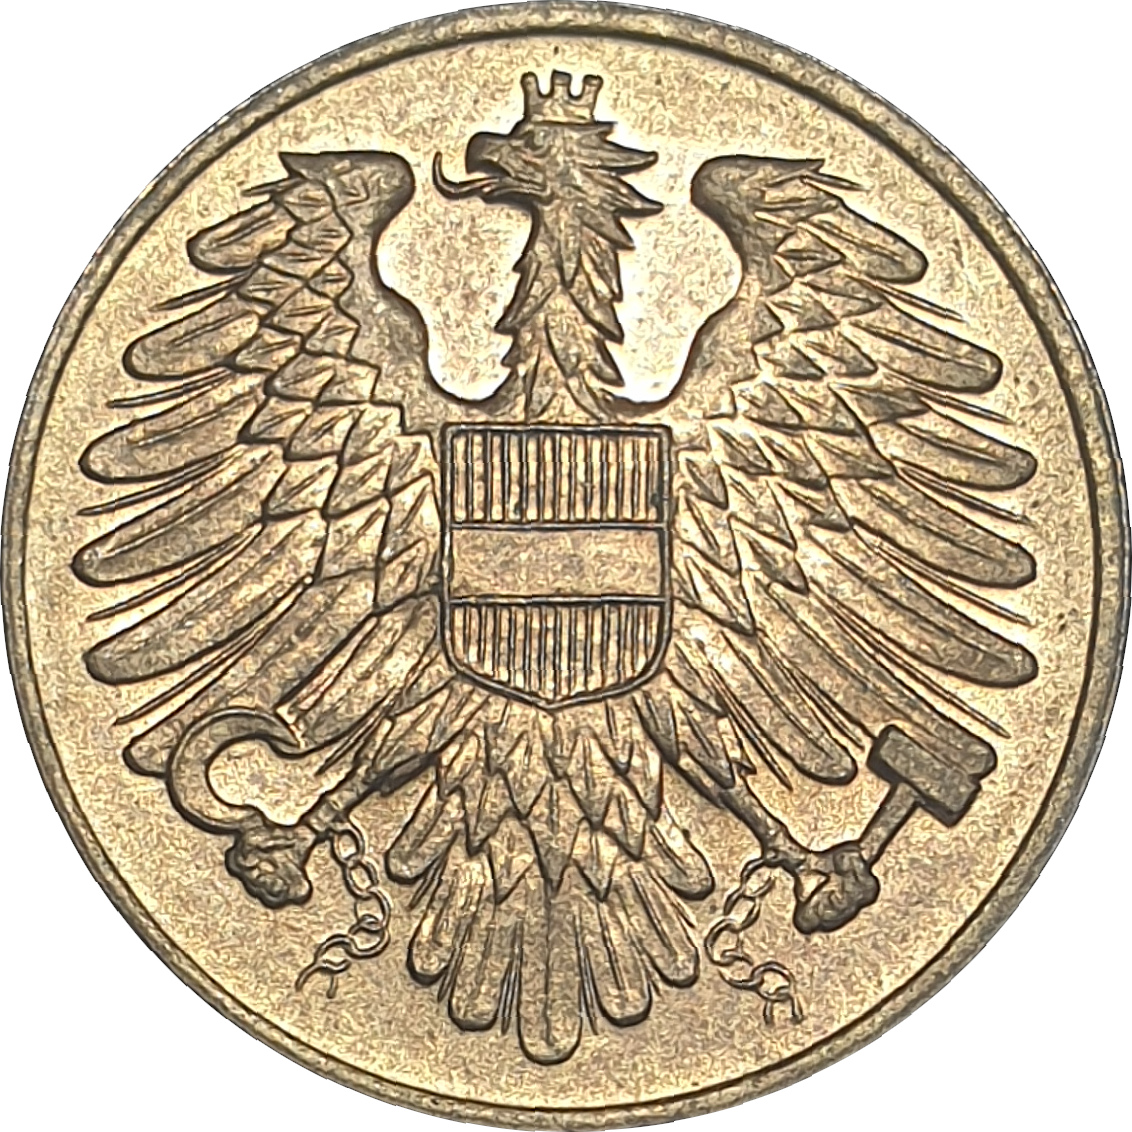 20 groschen - Eagle